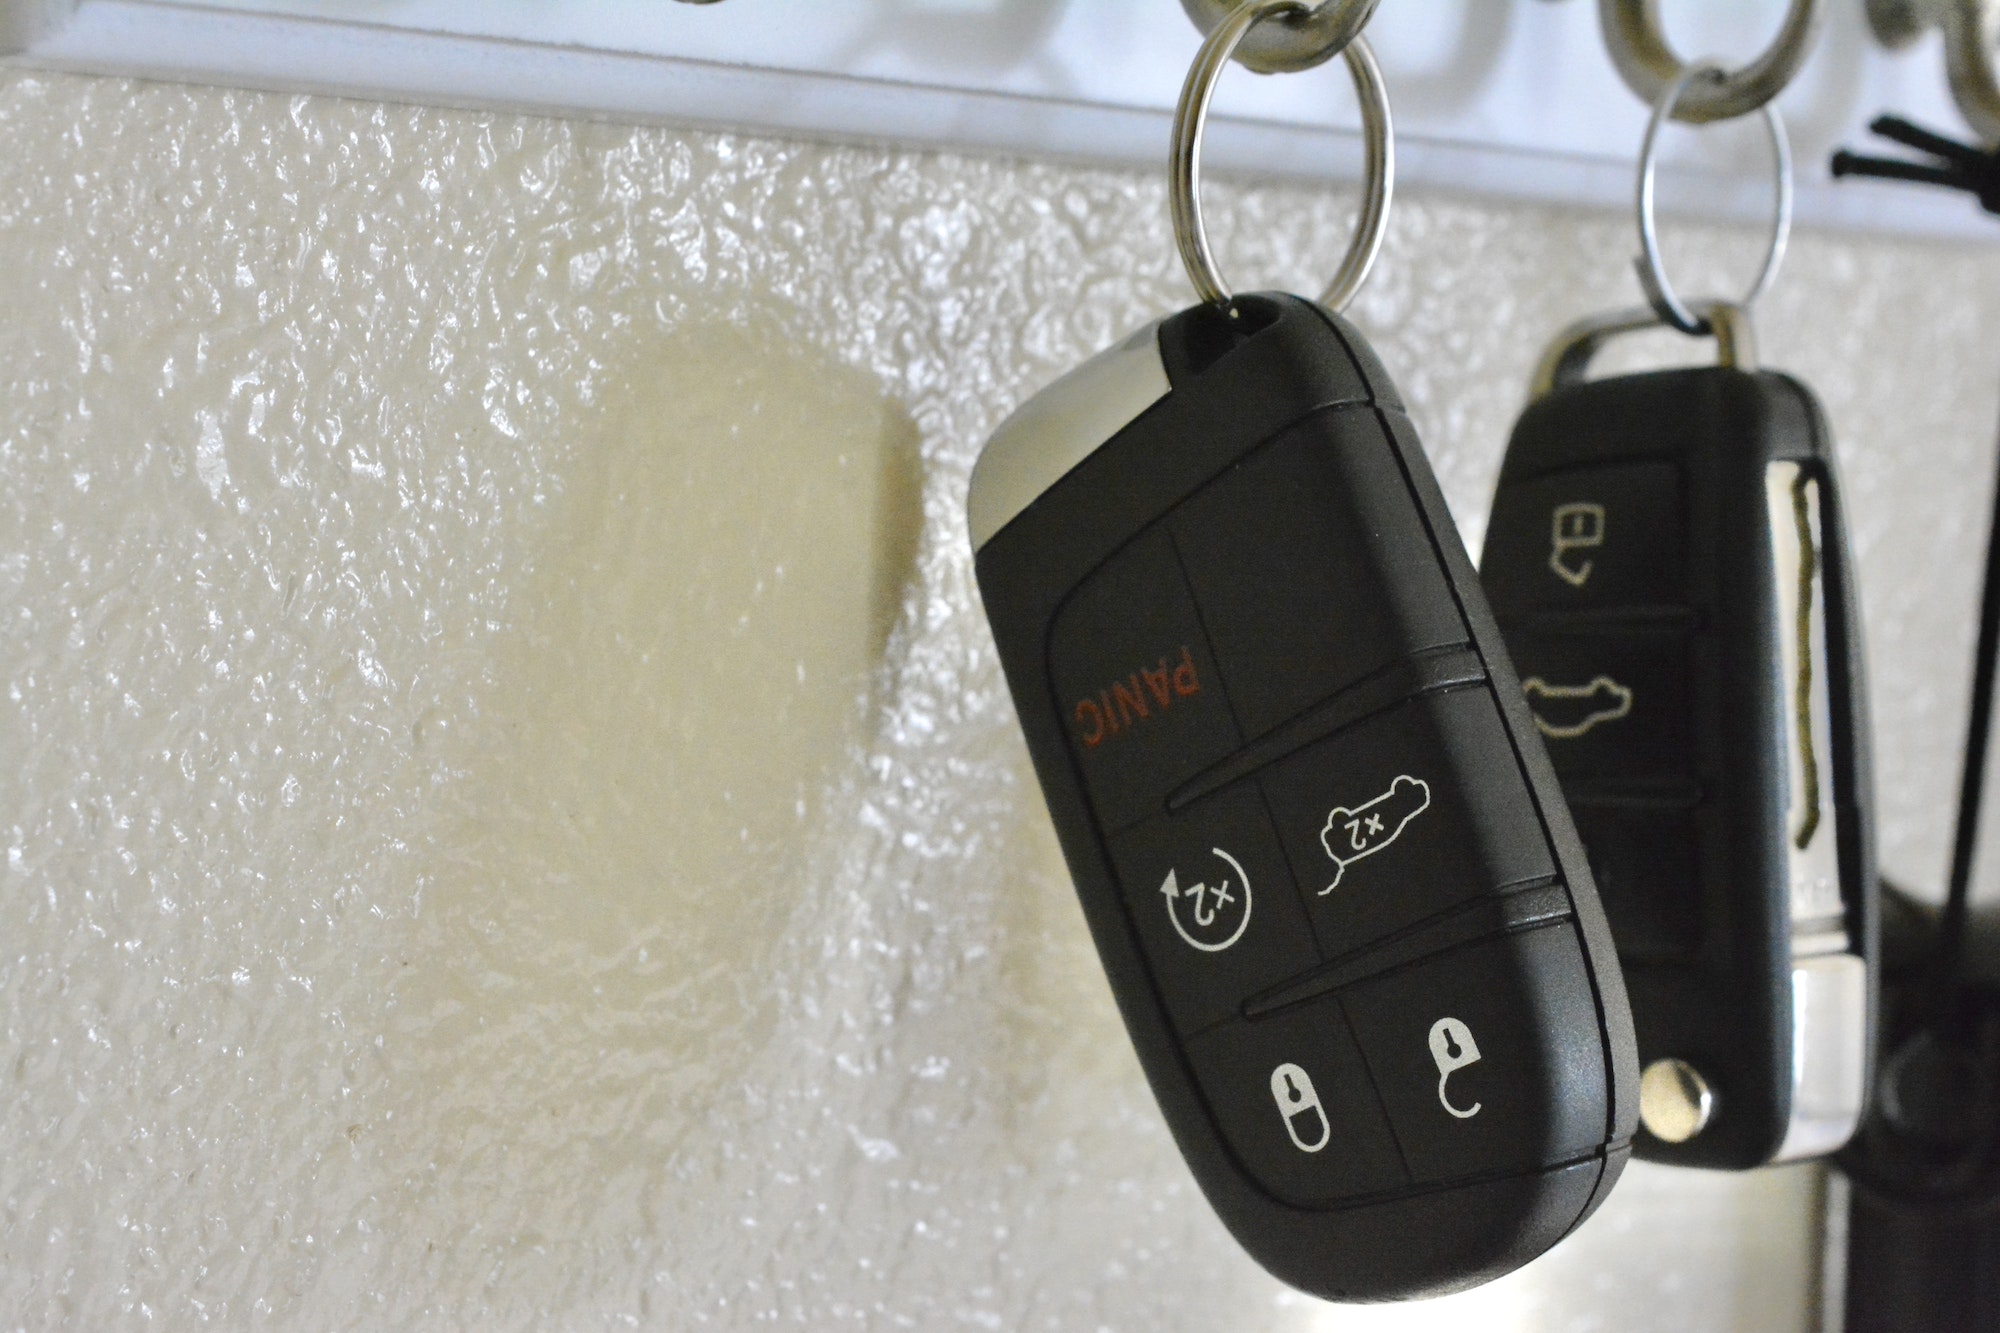 Llave keyless sin batería: cómo abrir y arrancar el coche